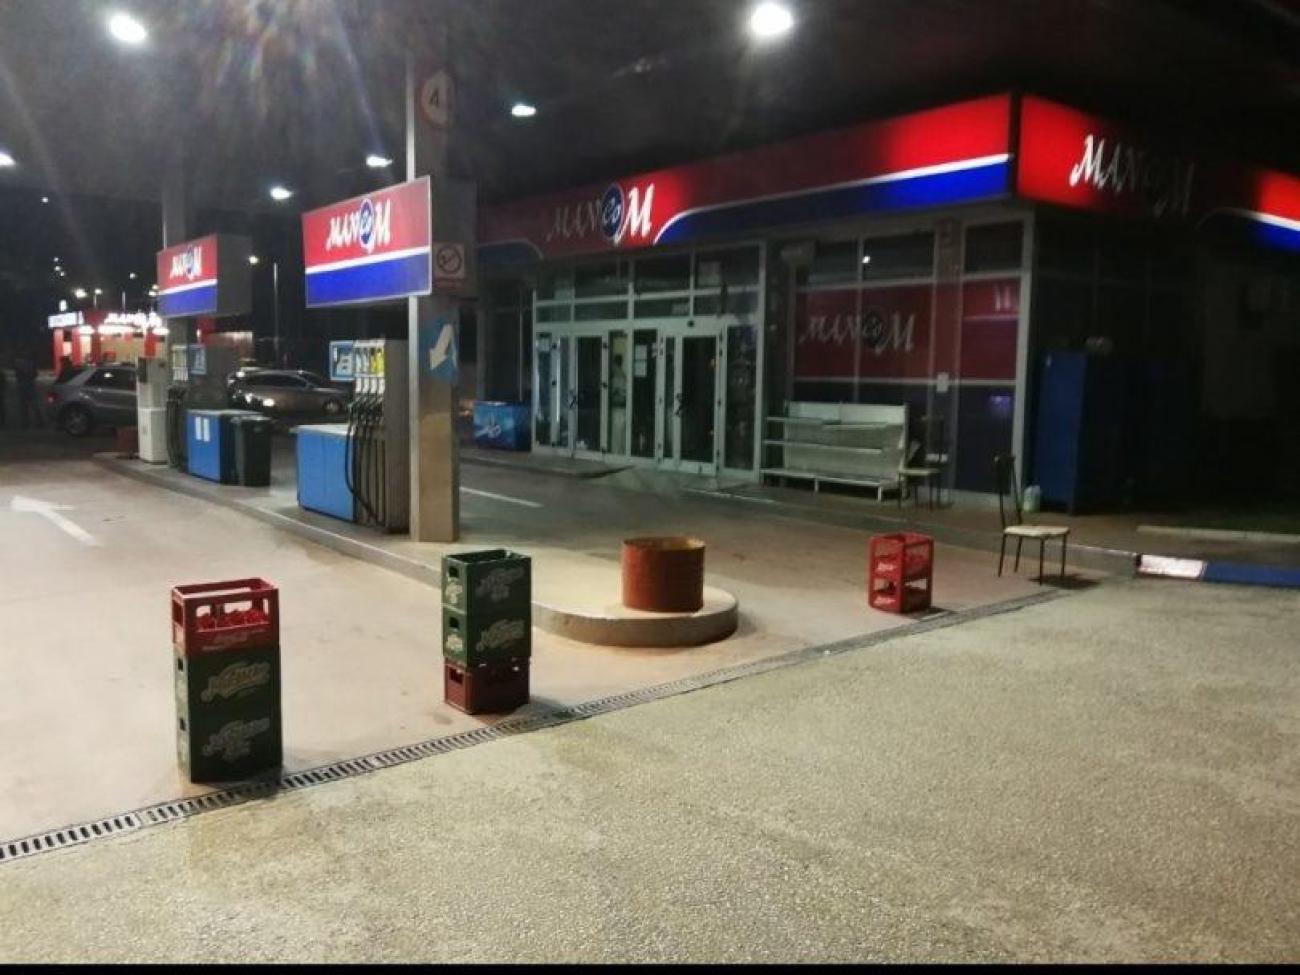 Radnici kolektivnim otkazom zbog malih plaća zatvorili benzinsku pumpu